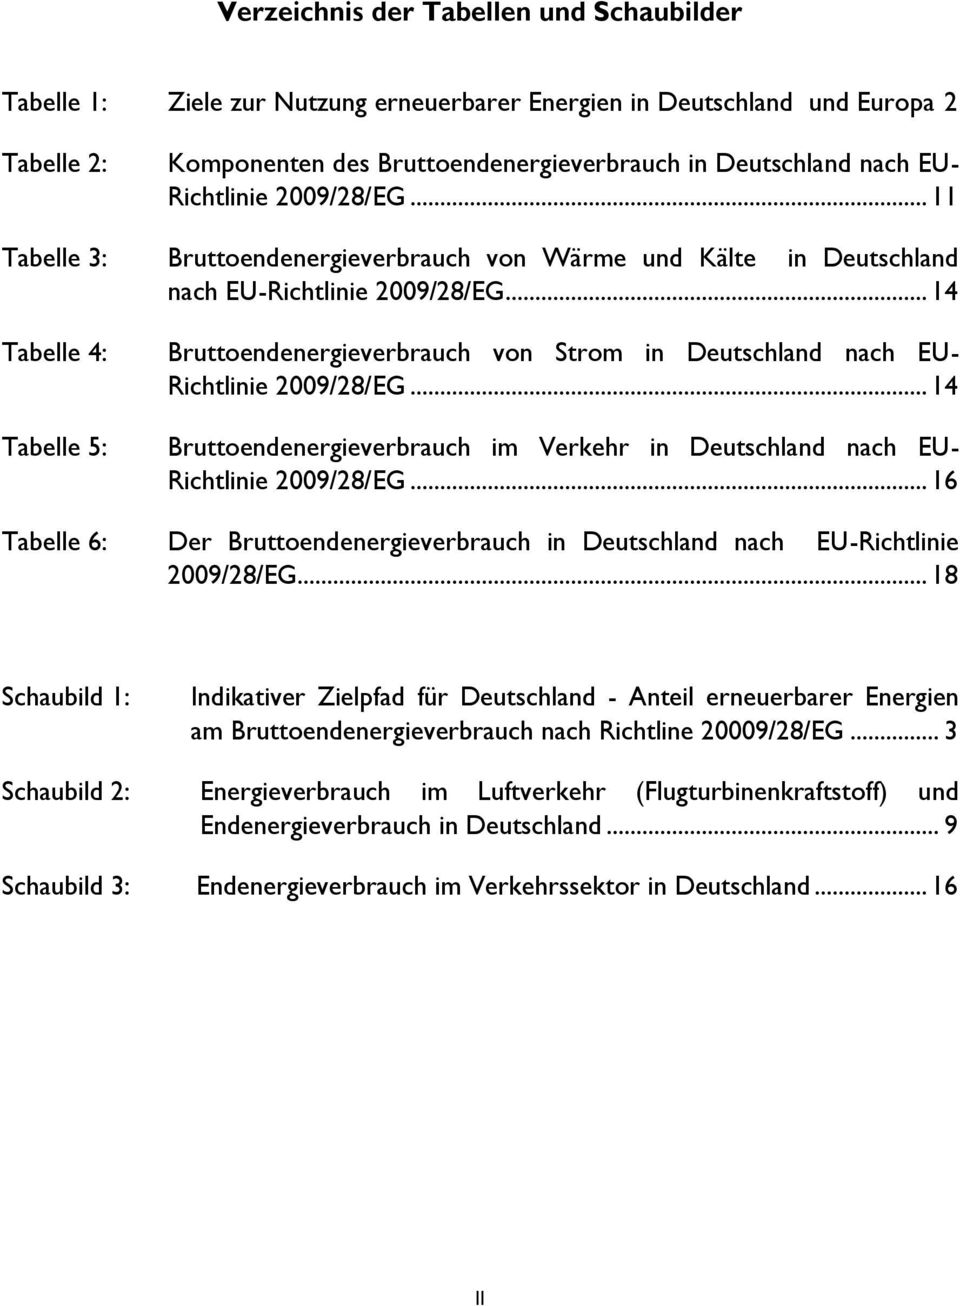 .. 14 Tabelle 4: Tabelle 5: Bruttoendenergieverbrauch von Strom in Deutschland nach EU- Richtlinie 2009/28/EG... 14 Bruttoendenergieverbrauch im Verkehr in Deutschland nach EU- Richtlinie 2009/28/EG.